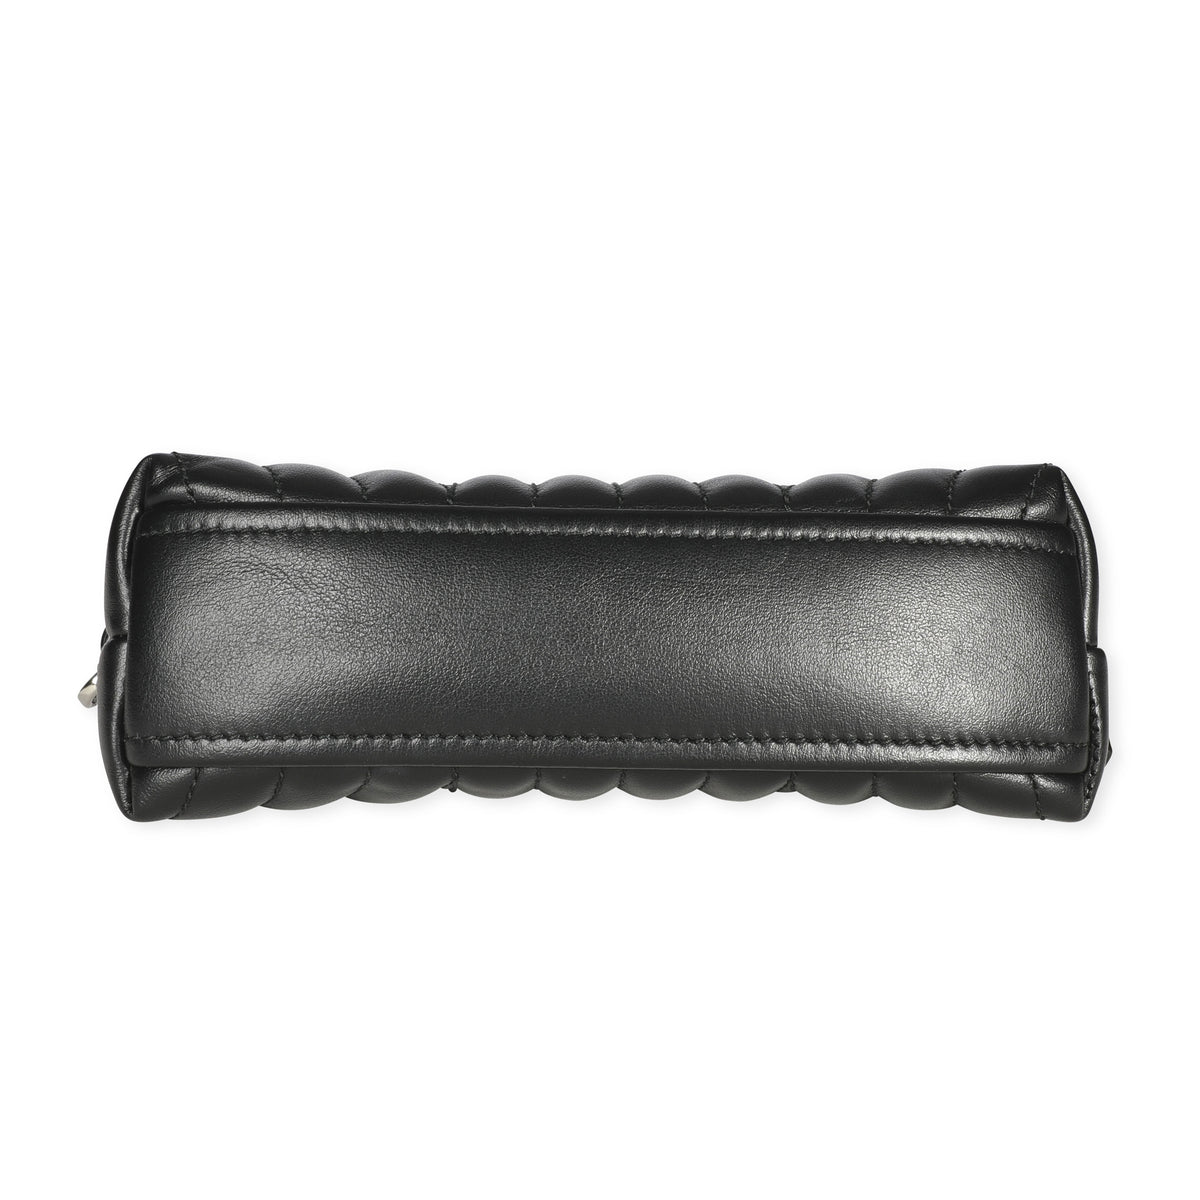 Prada Black Leather Diagramme Wristlet